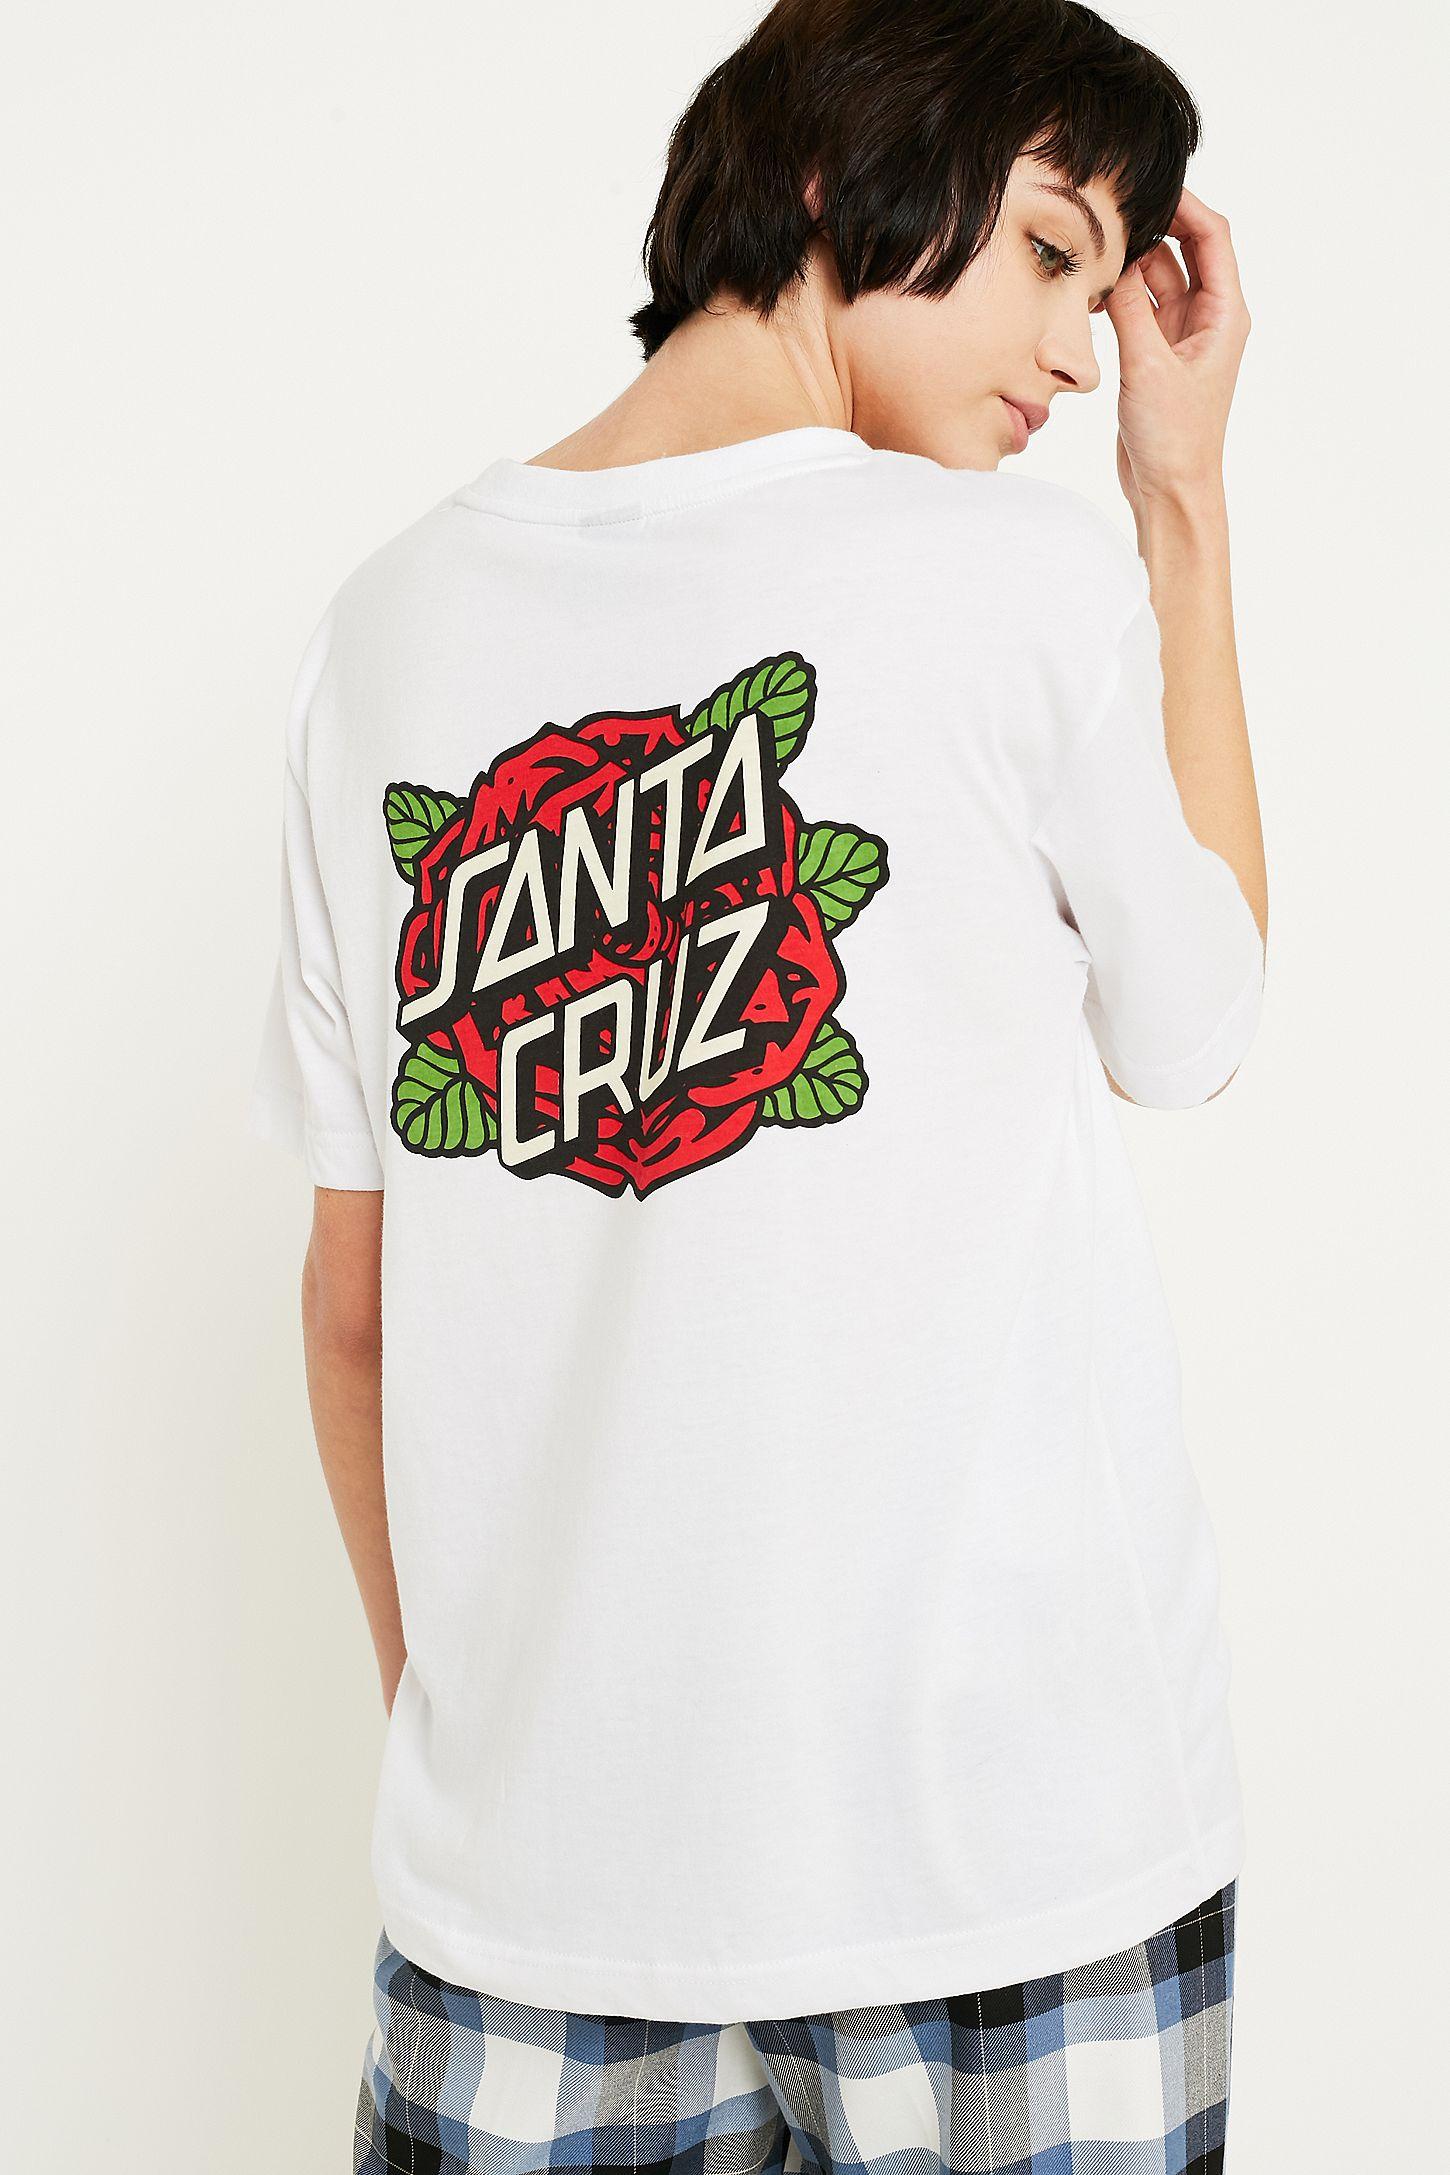 Santa Cruz Dot Logo - Santa Cruz Rose Dot Logo T-Shirt | Urban Outfitters UK